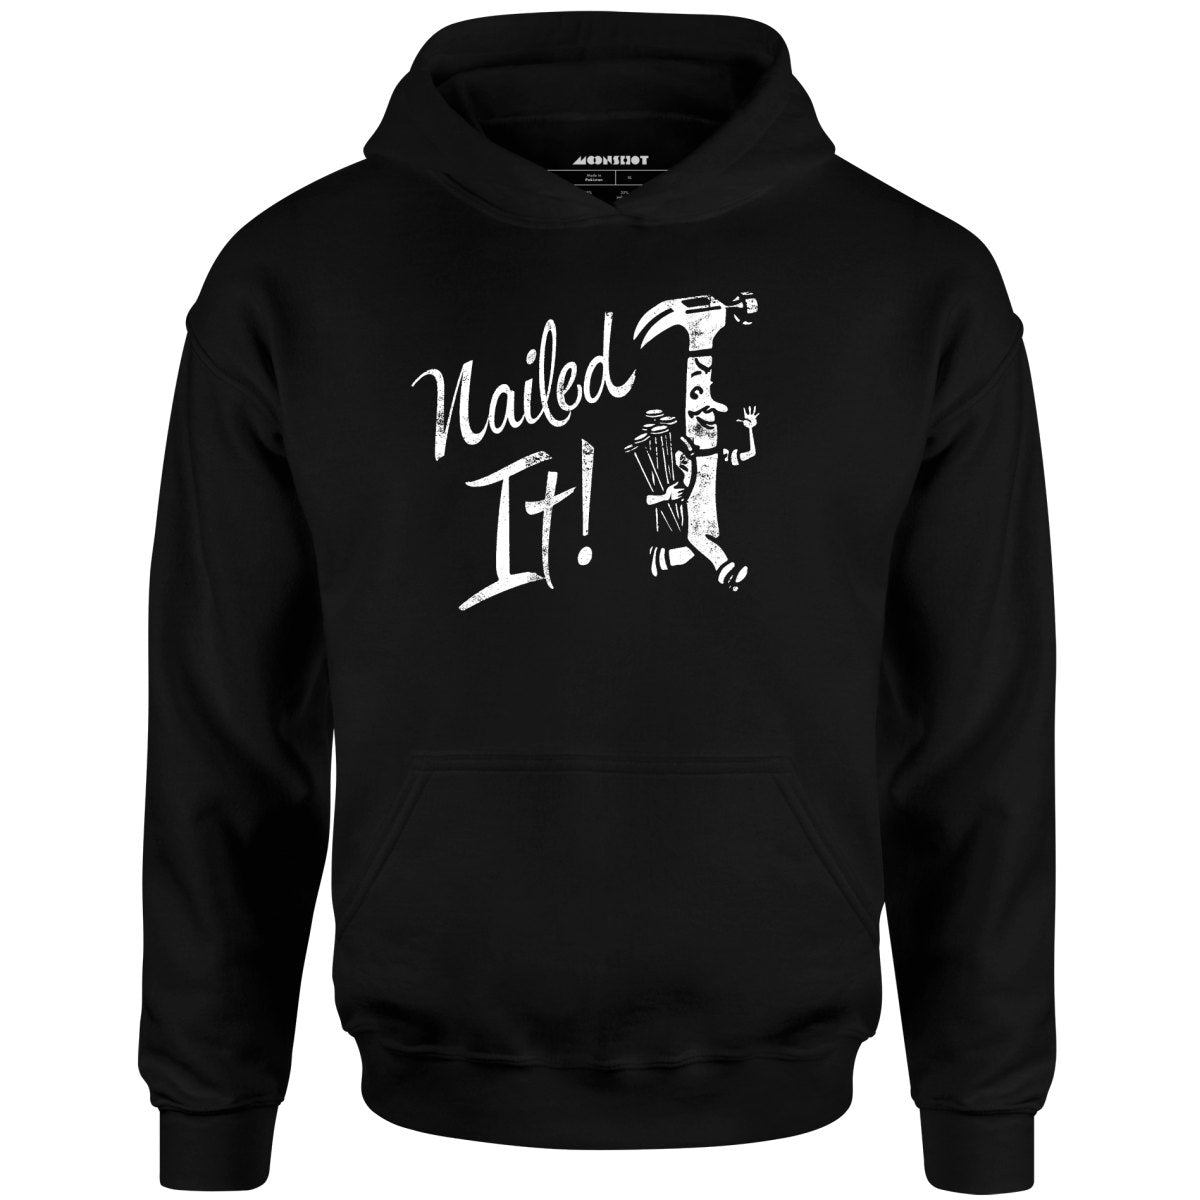 Nailed It! - Unisex Hoodie